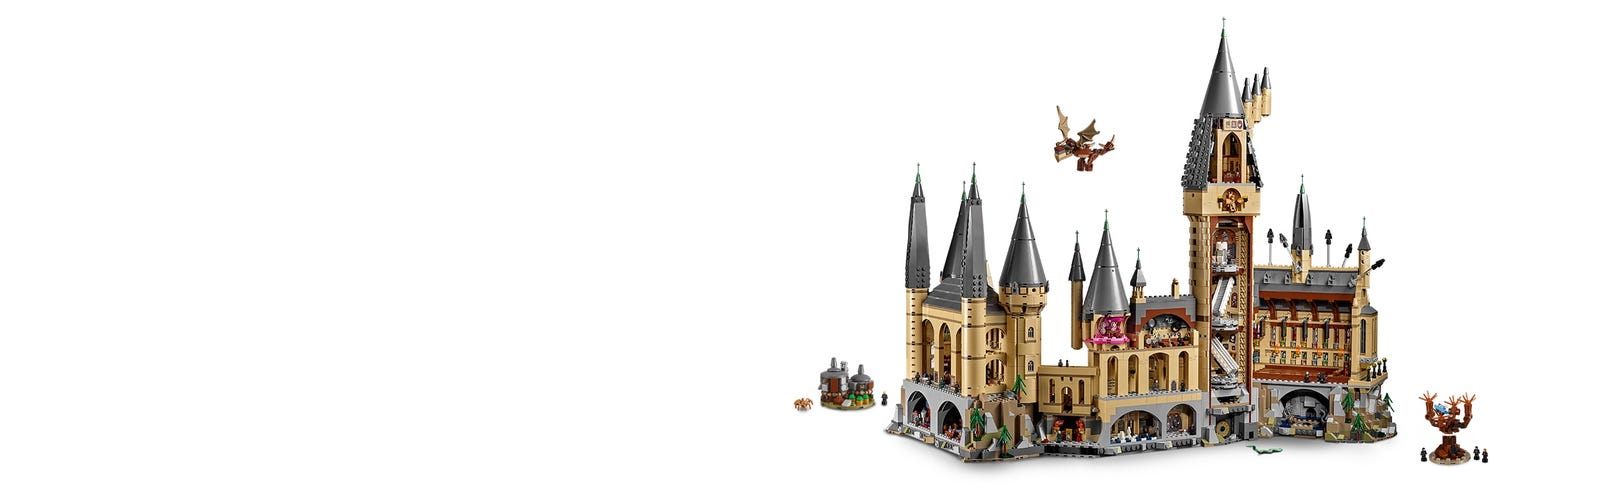 LEGO Harry Potter Castelo Hogwarts 71043 6020 Peças